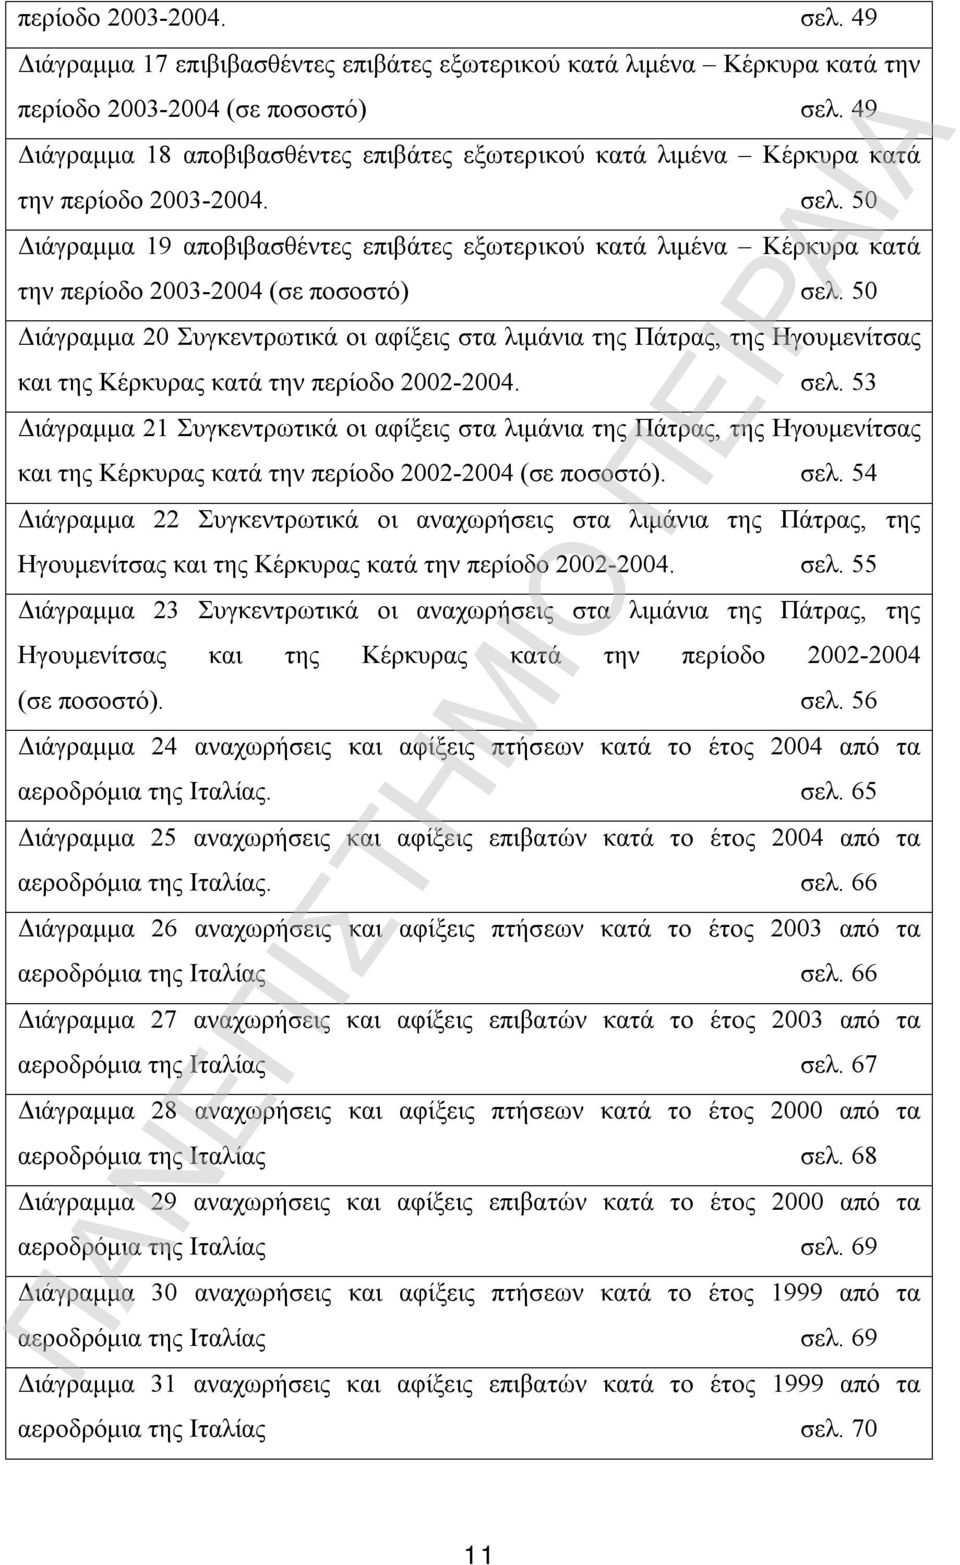 50 Διάγραμμα 19 αποβιβασθέντες επιβάτες εξωτερικού κατά λιμένα Κέρκυρα κατά την περίοδο 2003-2004 (σε ποσοστό) σελ.